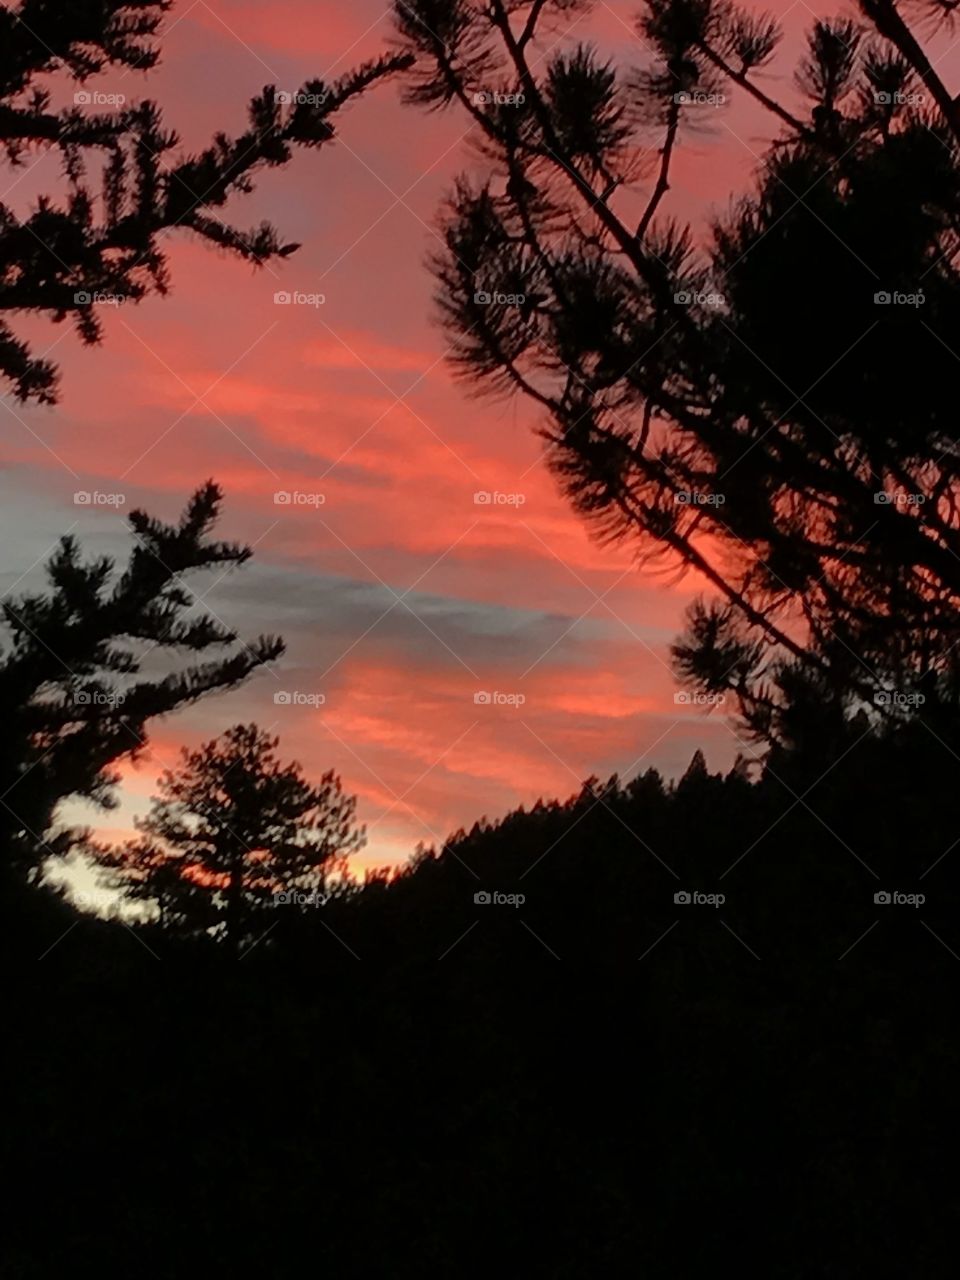 Red sky in morning 